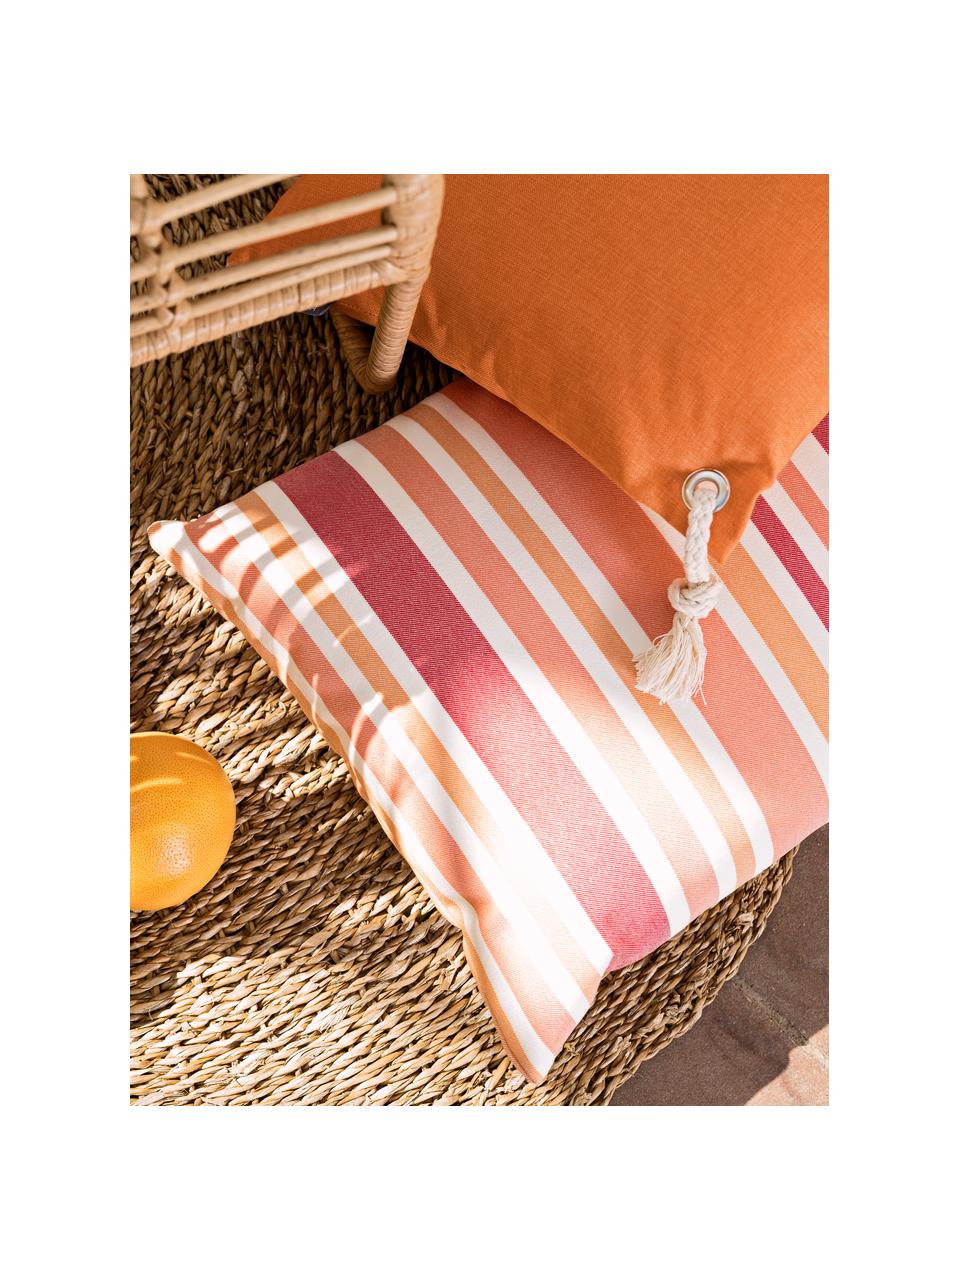 Poszewka na poduszkę zewnętrzną Marbella, 100% poliakryl Dralon®, Pomarańczowy, biały, odcienie różowego, S 40 x D 60 cm